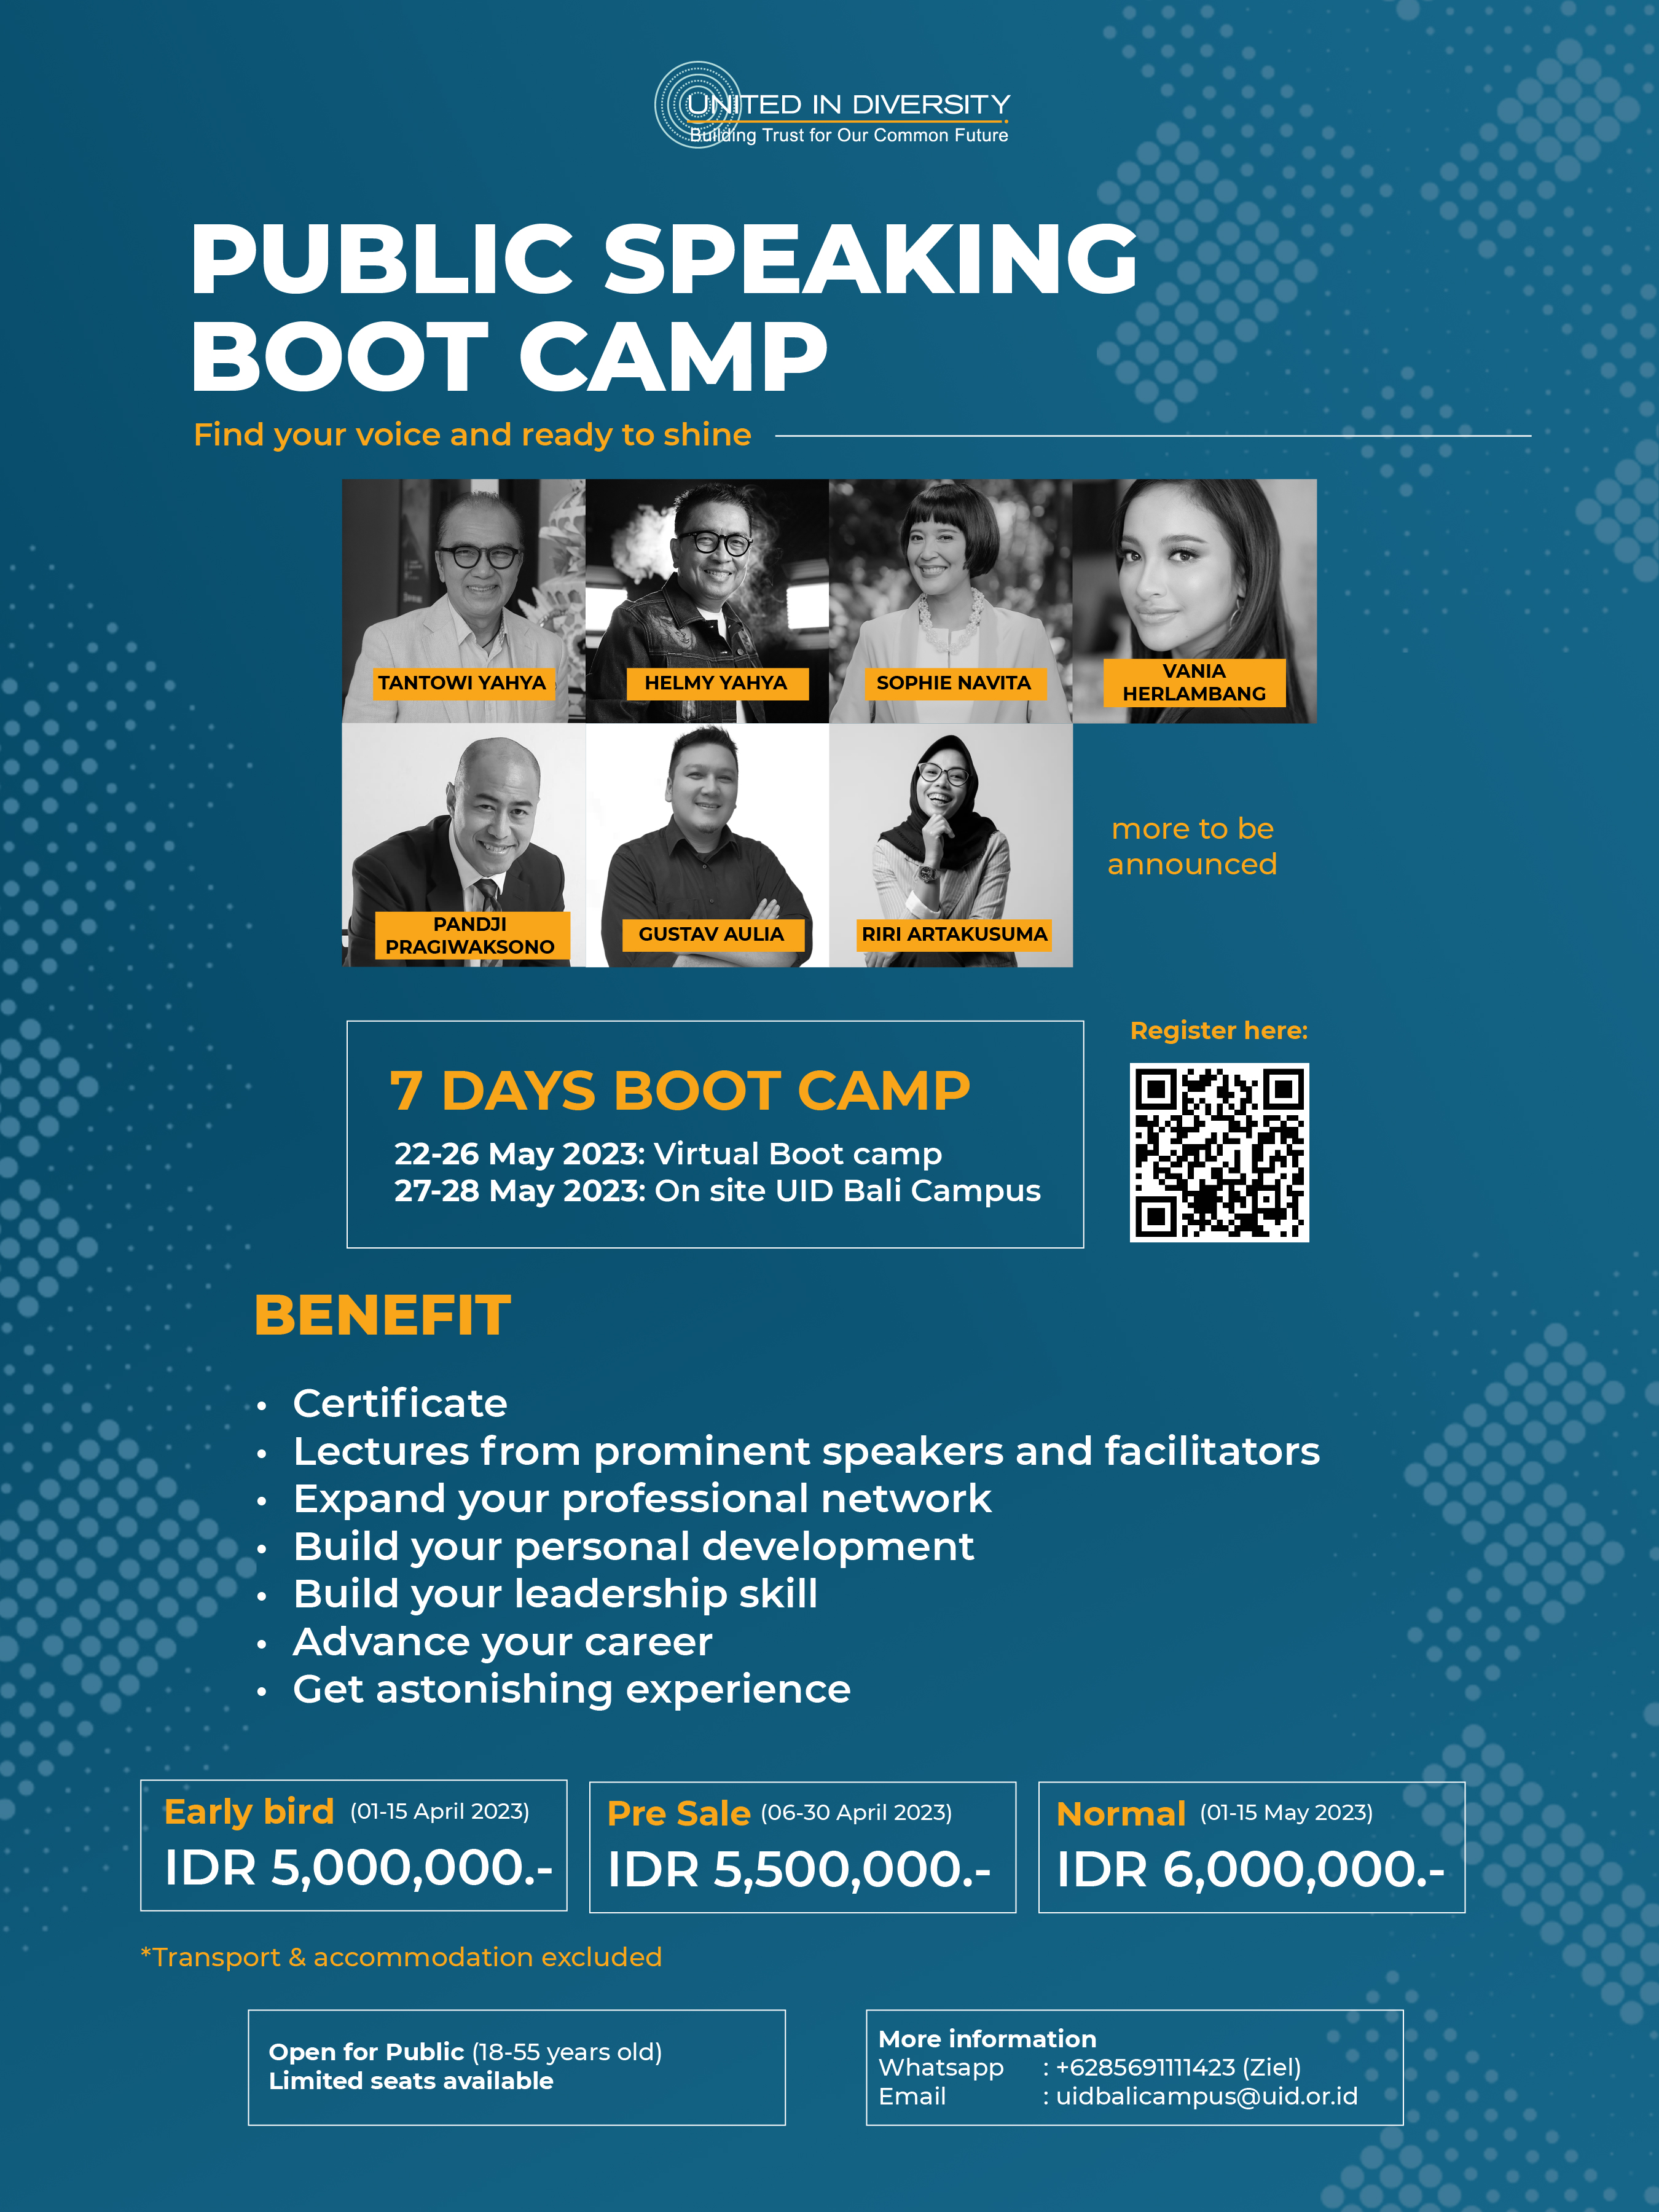 UID Bali Campus: Public Speaking Boot Camp